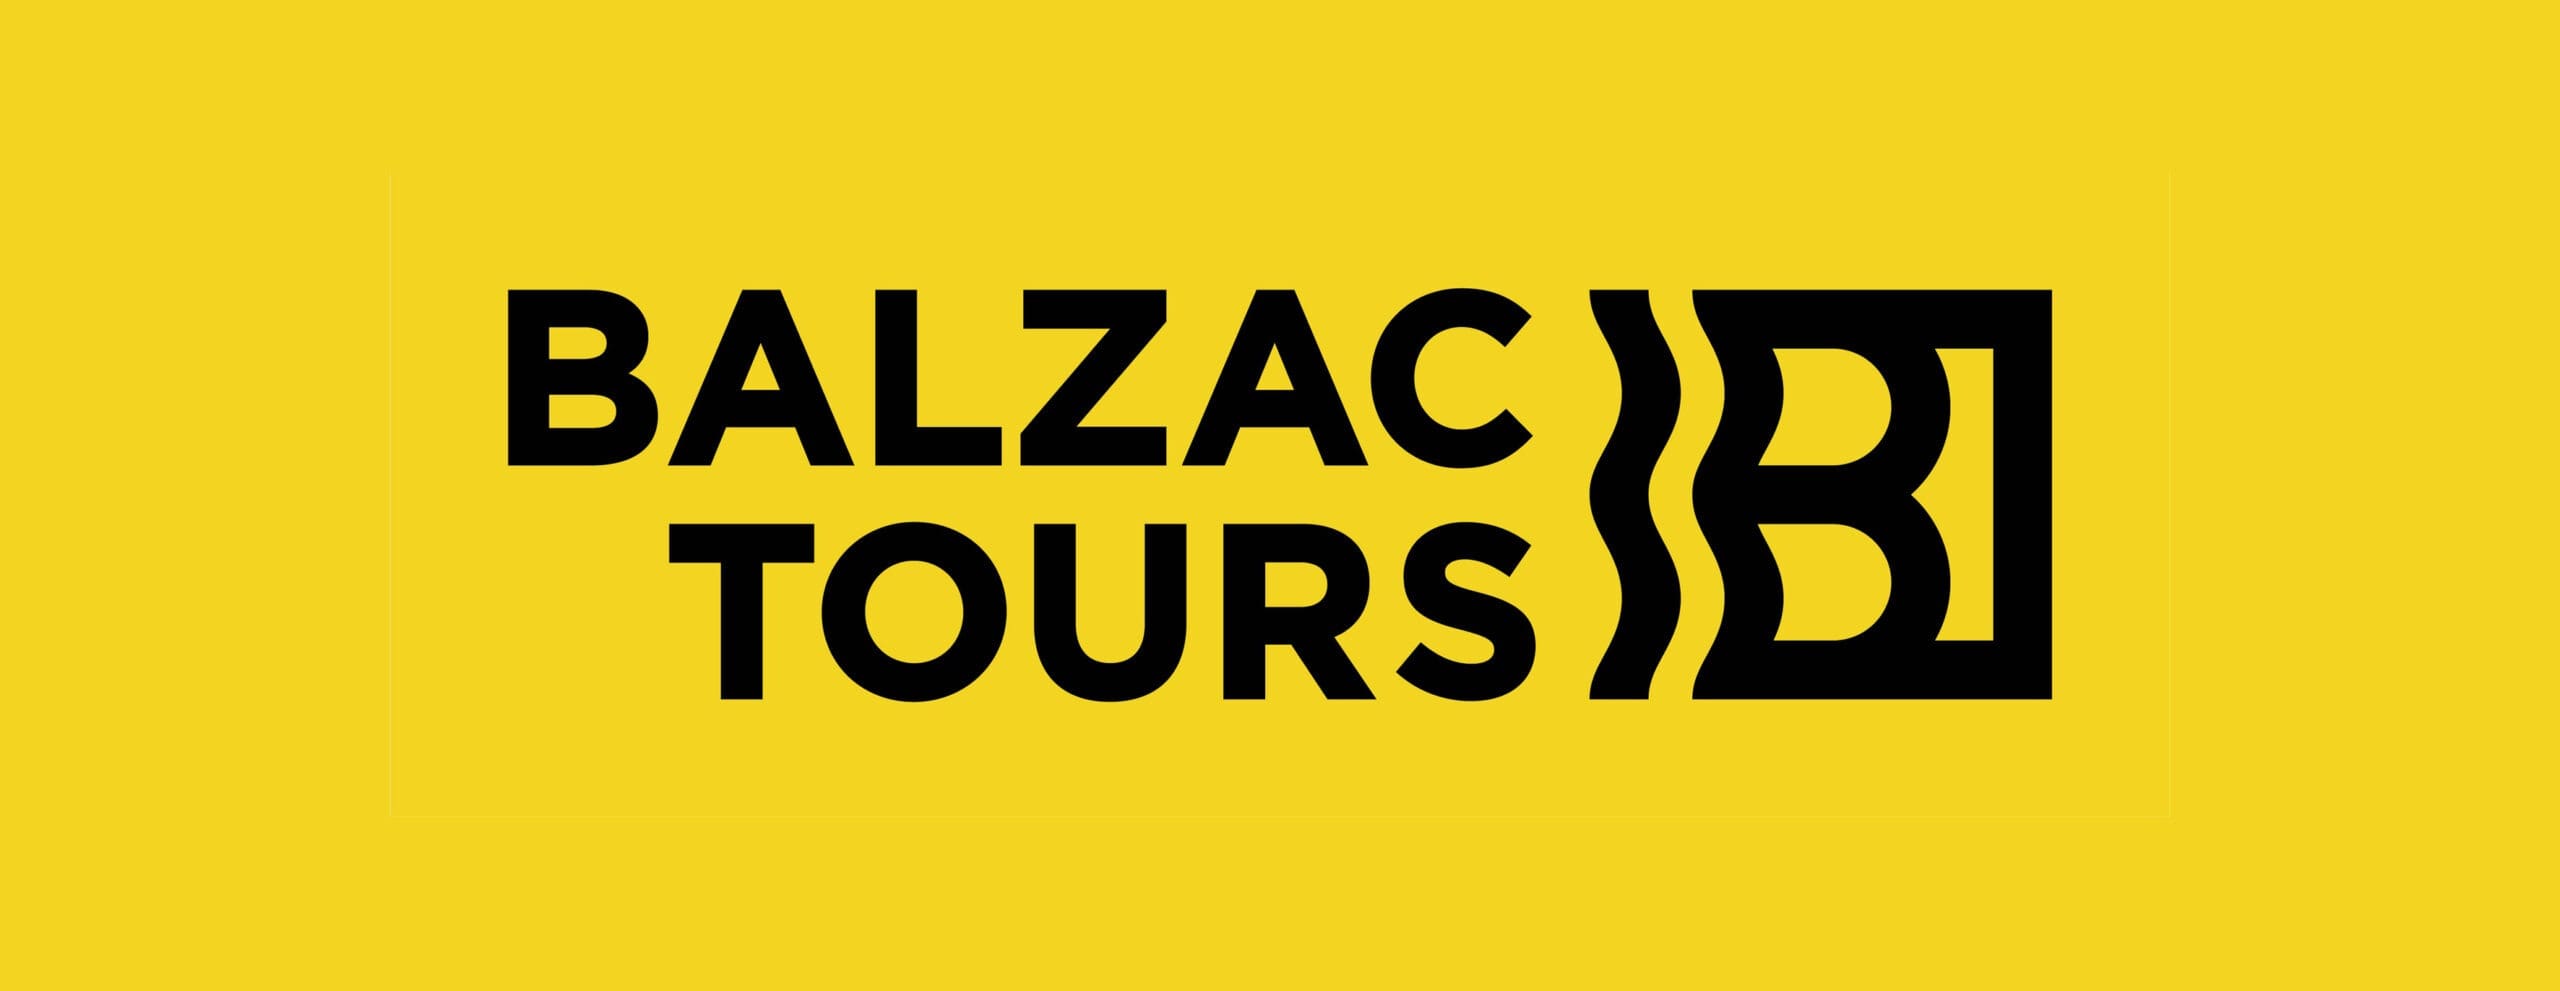 Blazac Tours Vikiu design